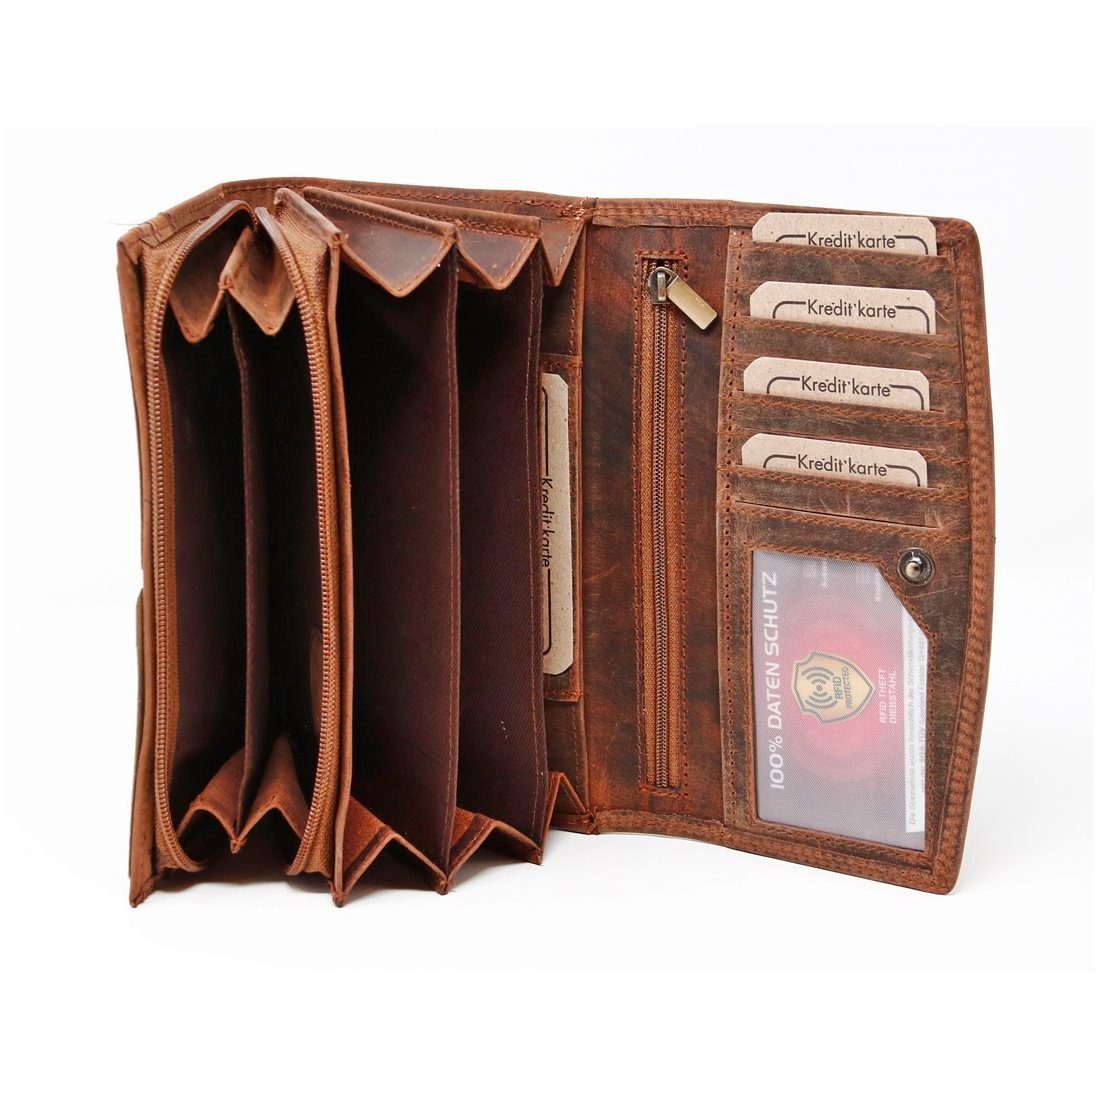 Leder Pferdekopf Münzfach Damen Motiv großes Börse Portemonnaie, SHG Geldbörse Lederbörse RFID Schutz + Kartenfächer 17